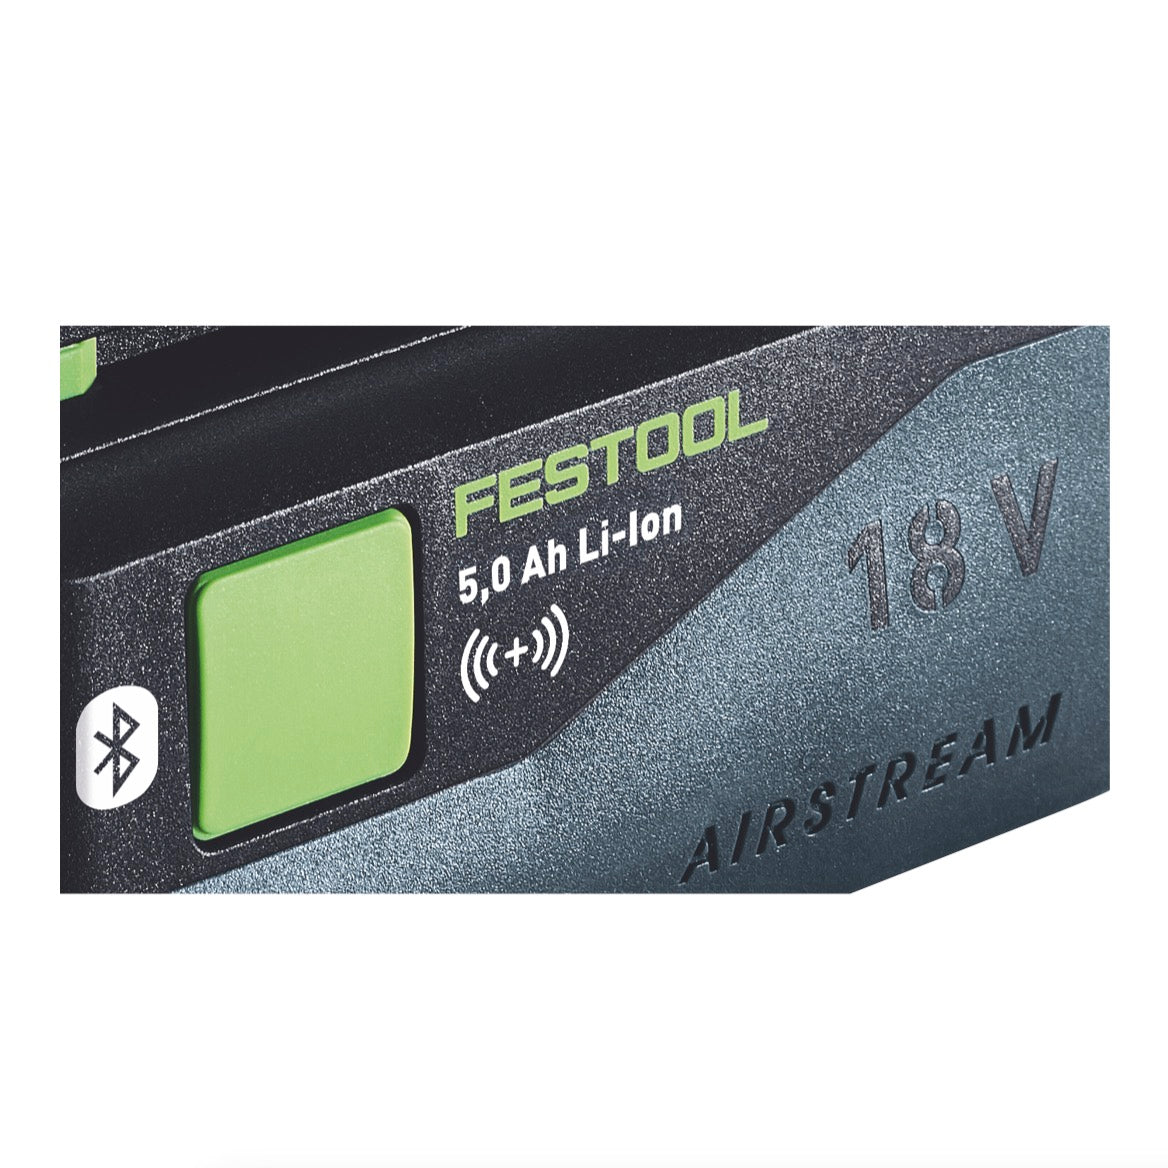 Festool BP 18 Li 5,0 ASI Akku 18 V 5,0 Ah / 5000 mAh Li-Ion ( 577660 ) Bluetooth mit Ladestandanzeige - Toolbrothers